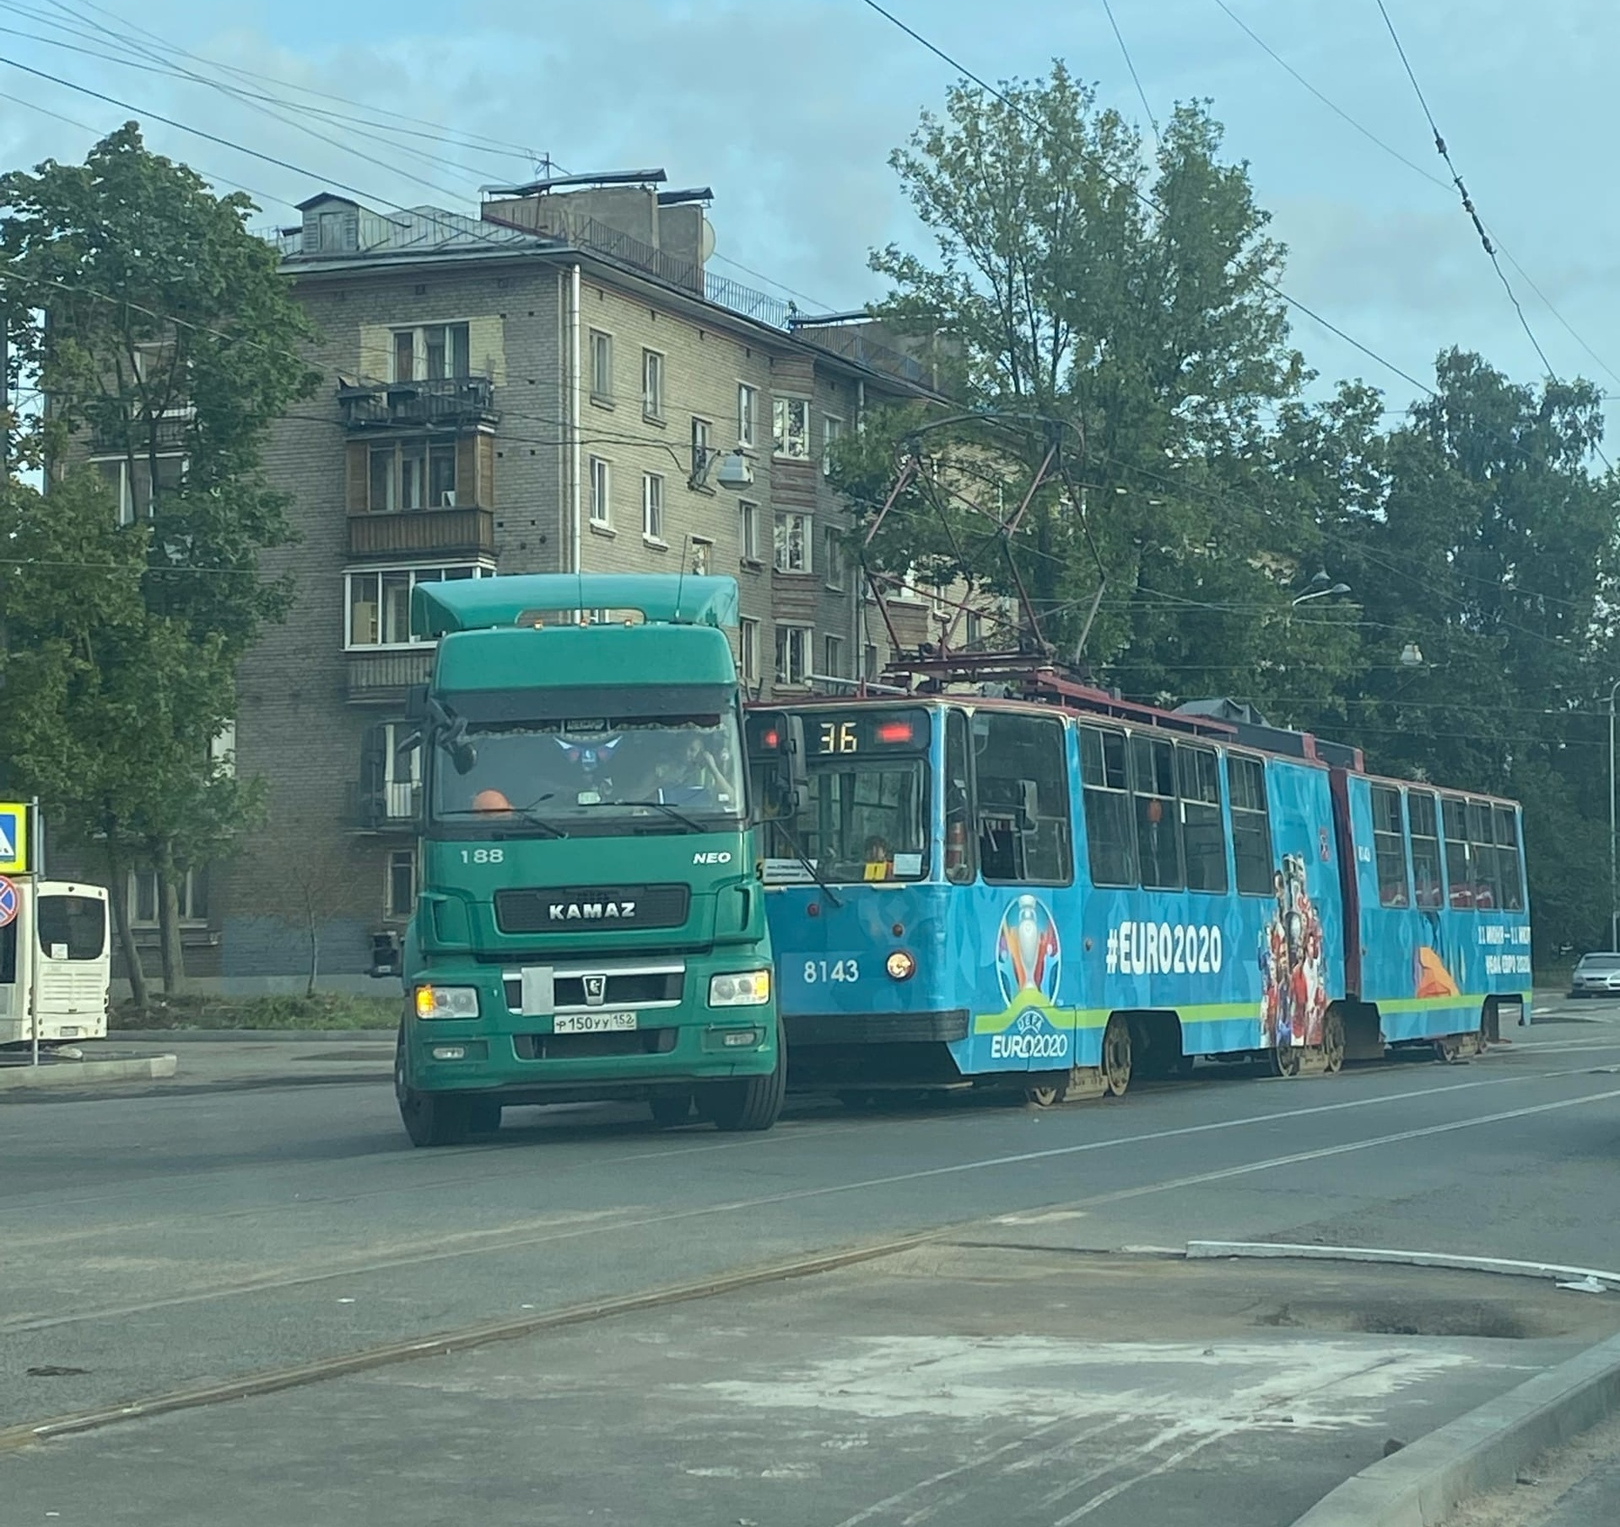 ДТП в сине-зелёных тонах. На Кронштадтской КАМАЗ подставился под трамвай